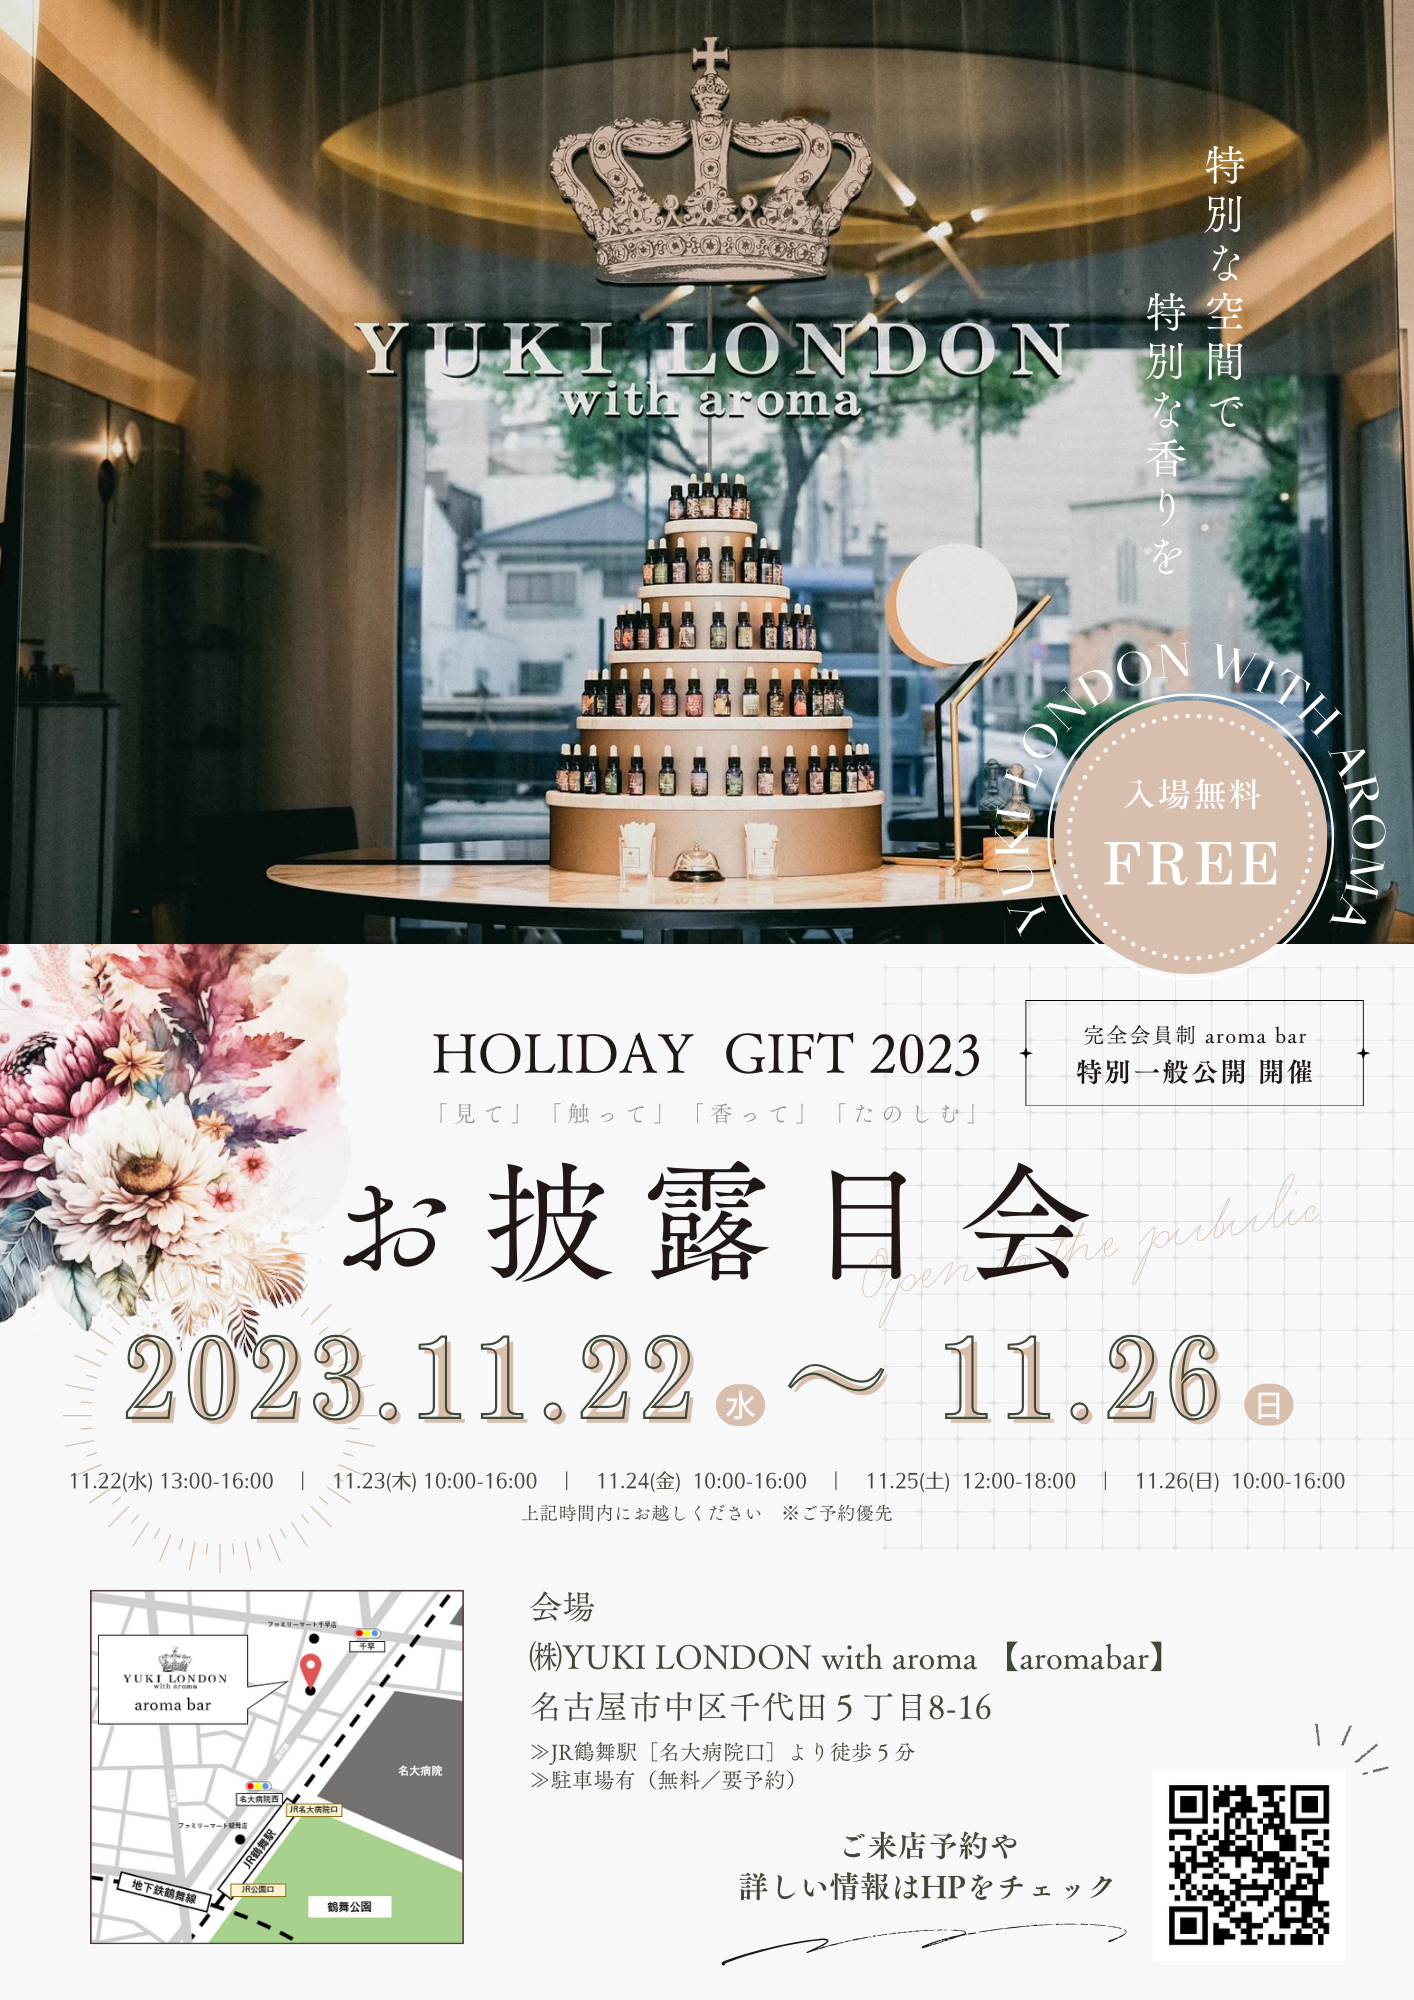 【名古屋】クリスマスの特別な香りを楽しむ"アロマのギャラリー" aroma bar一般公開